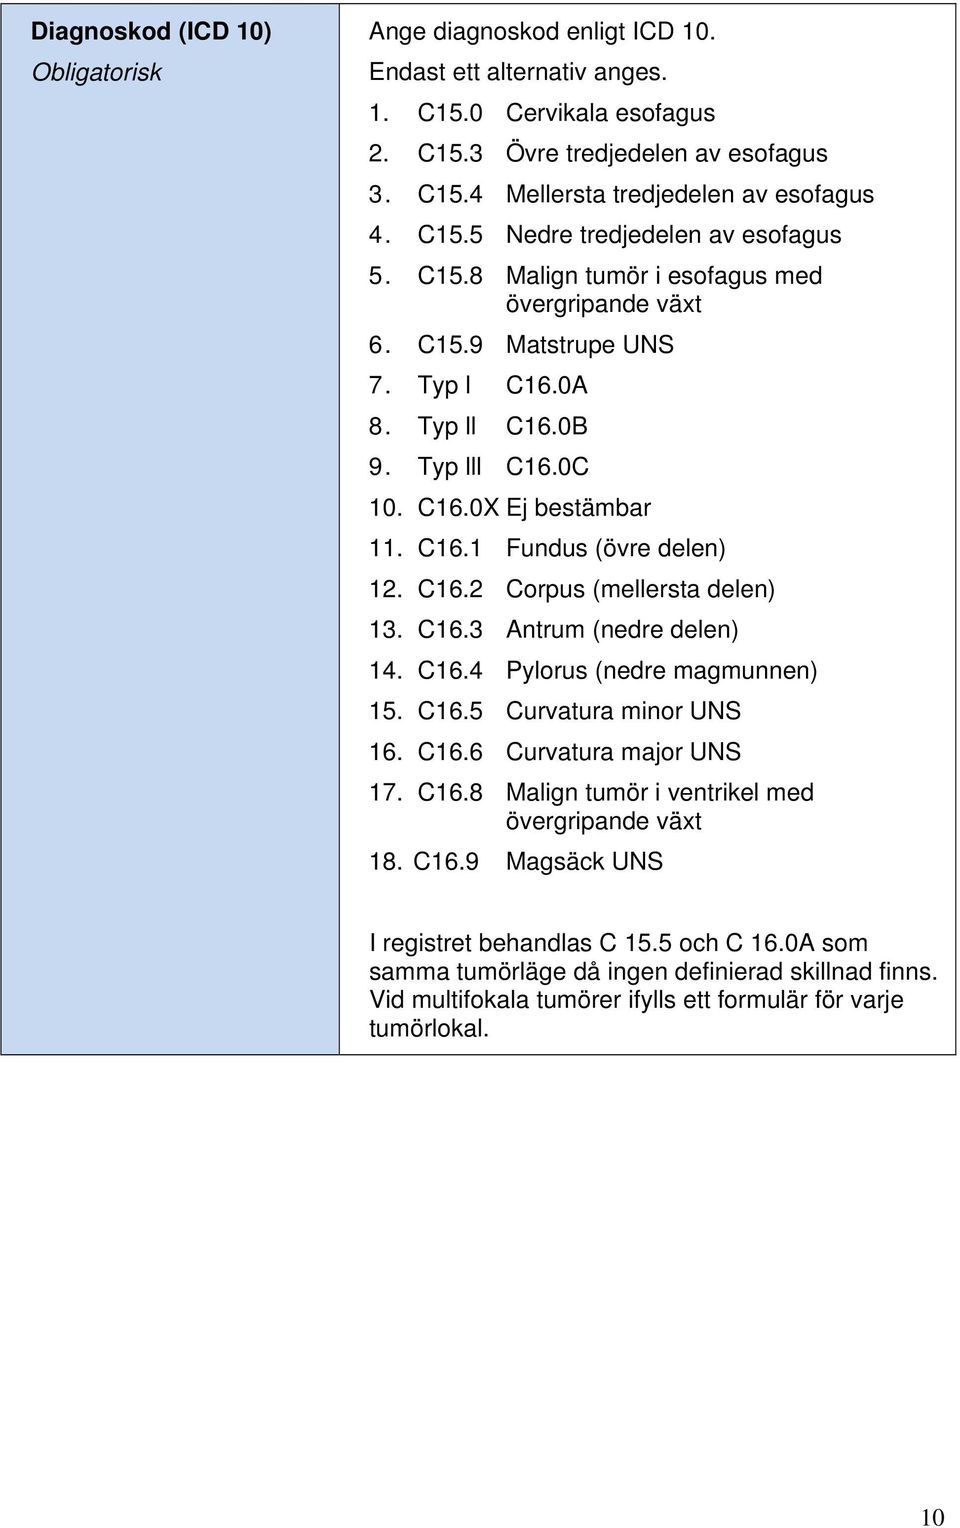 C16.3 Antrum (nedre delen) 14. C16.4 Pylorus (nedre magmunnen) 15. C16.5 Curvatura minor UNS 16. C16.6 Curvatura major UNS 17. C16.8 Malign tumör i ventrikel med övergripande växt 18. C16.9 Magsäck UNS I registret behandlas C 15.